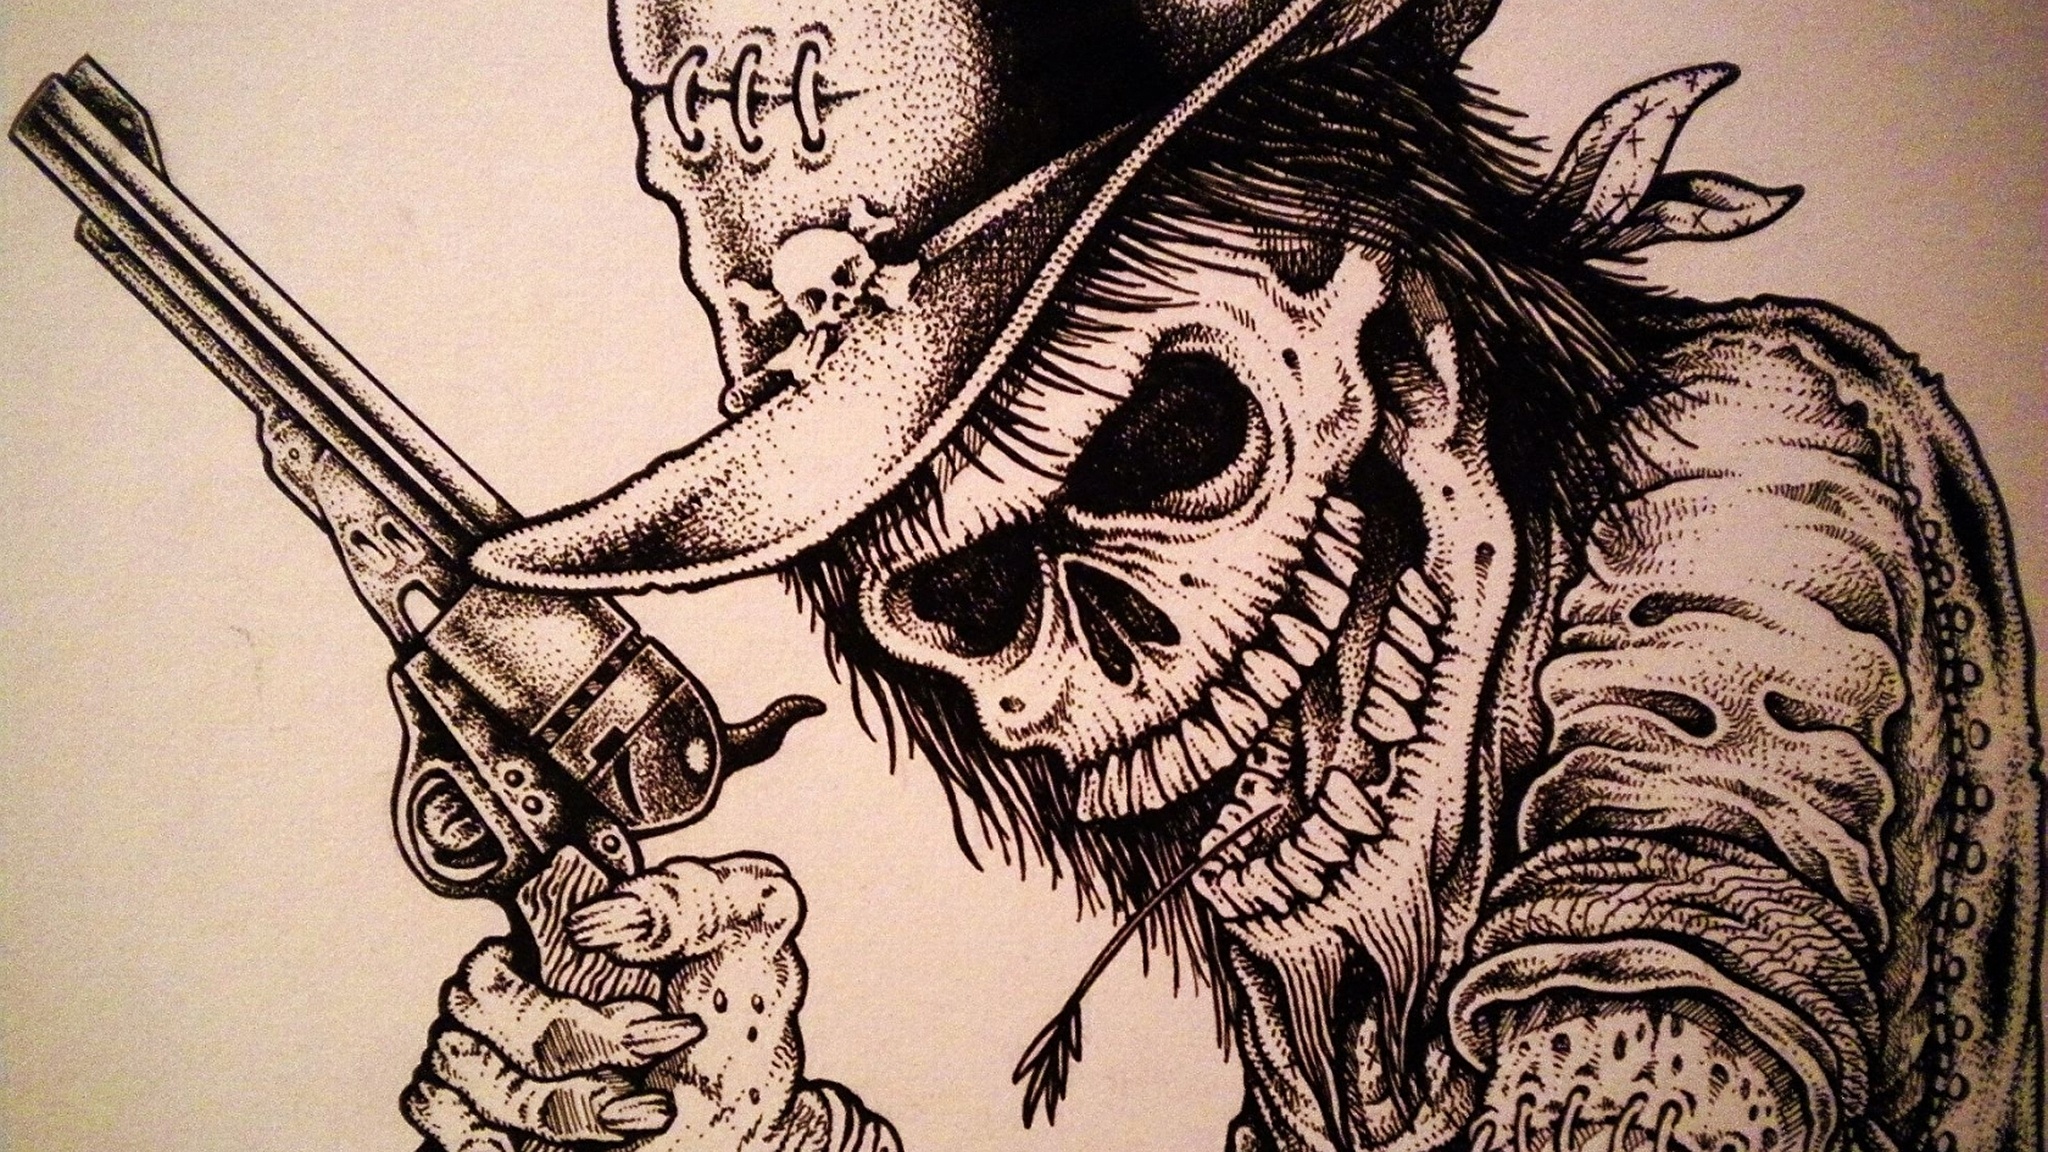 General 2048x1152 skull cowboy hats revolver artwork digital art closeup